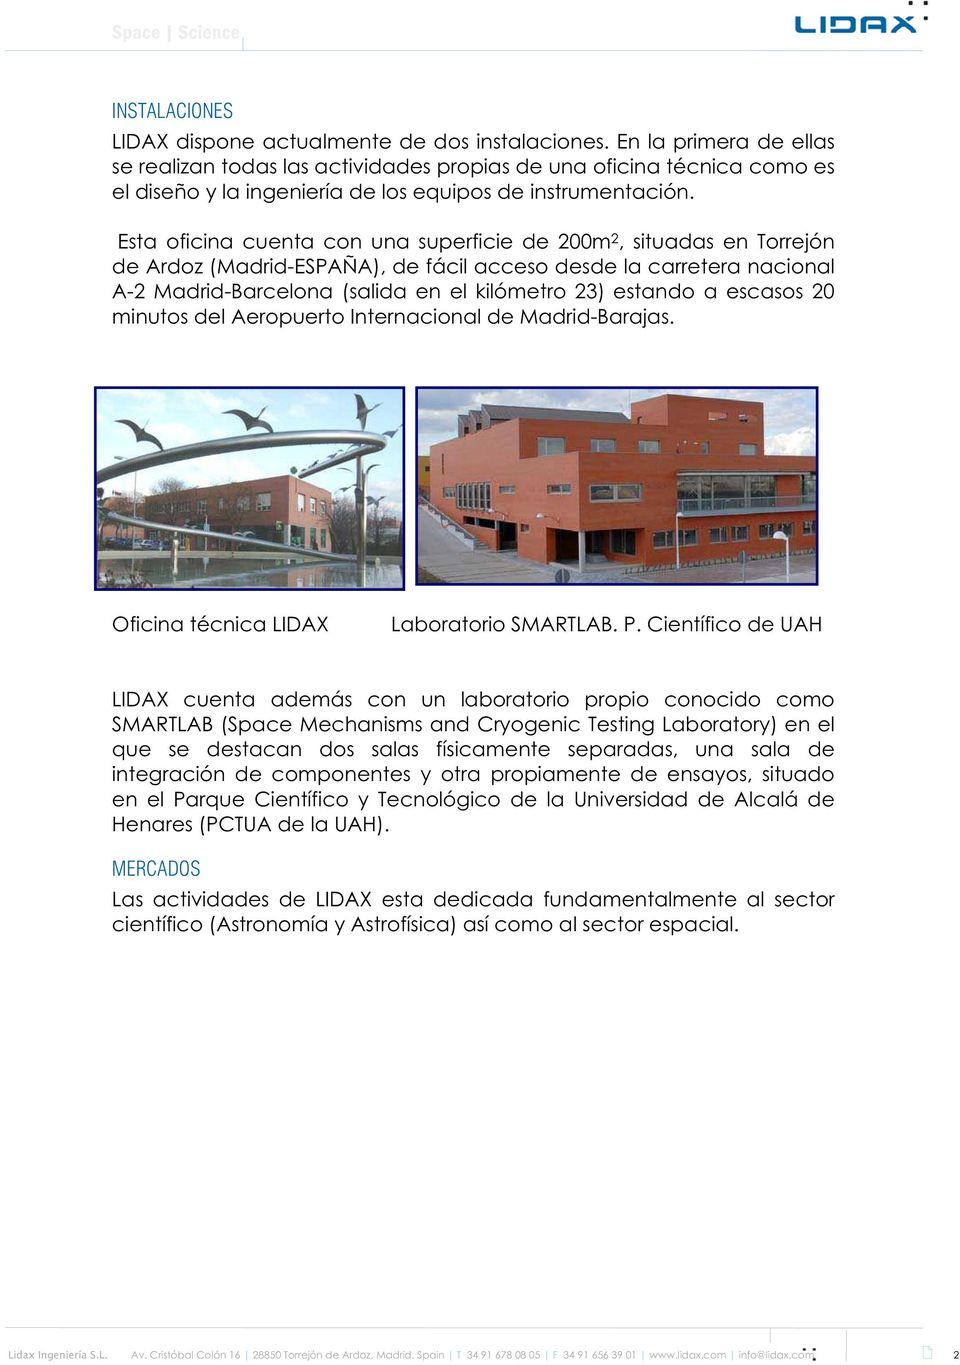 Esta oficina cuenta con una superficie de 200m 2, situadas en Torrejón de Ardoz (Madrid-ESPAÑA), de fácil acceso desde la carretera nacional A-2 Madrid-Barcelona (salida en el kilómetro 23) estando a